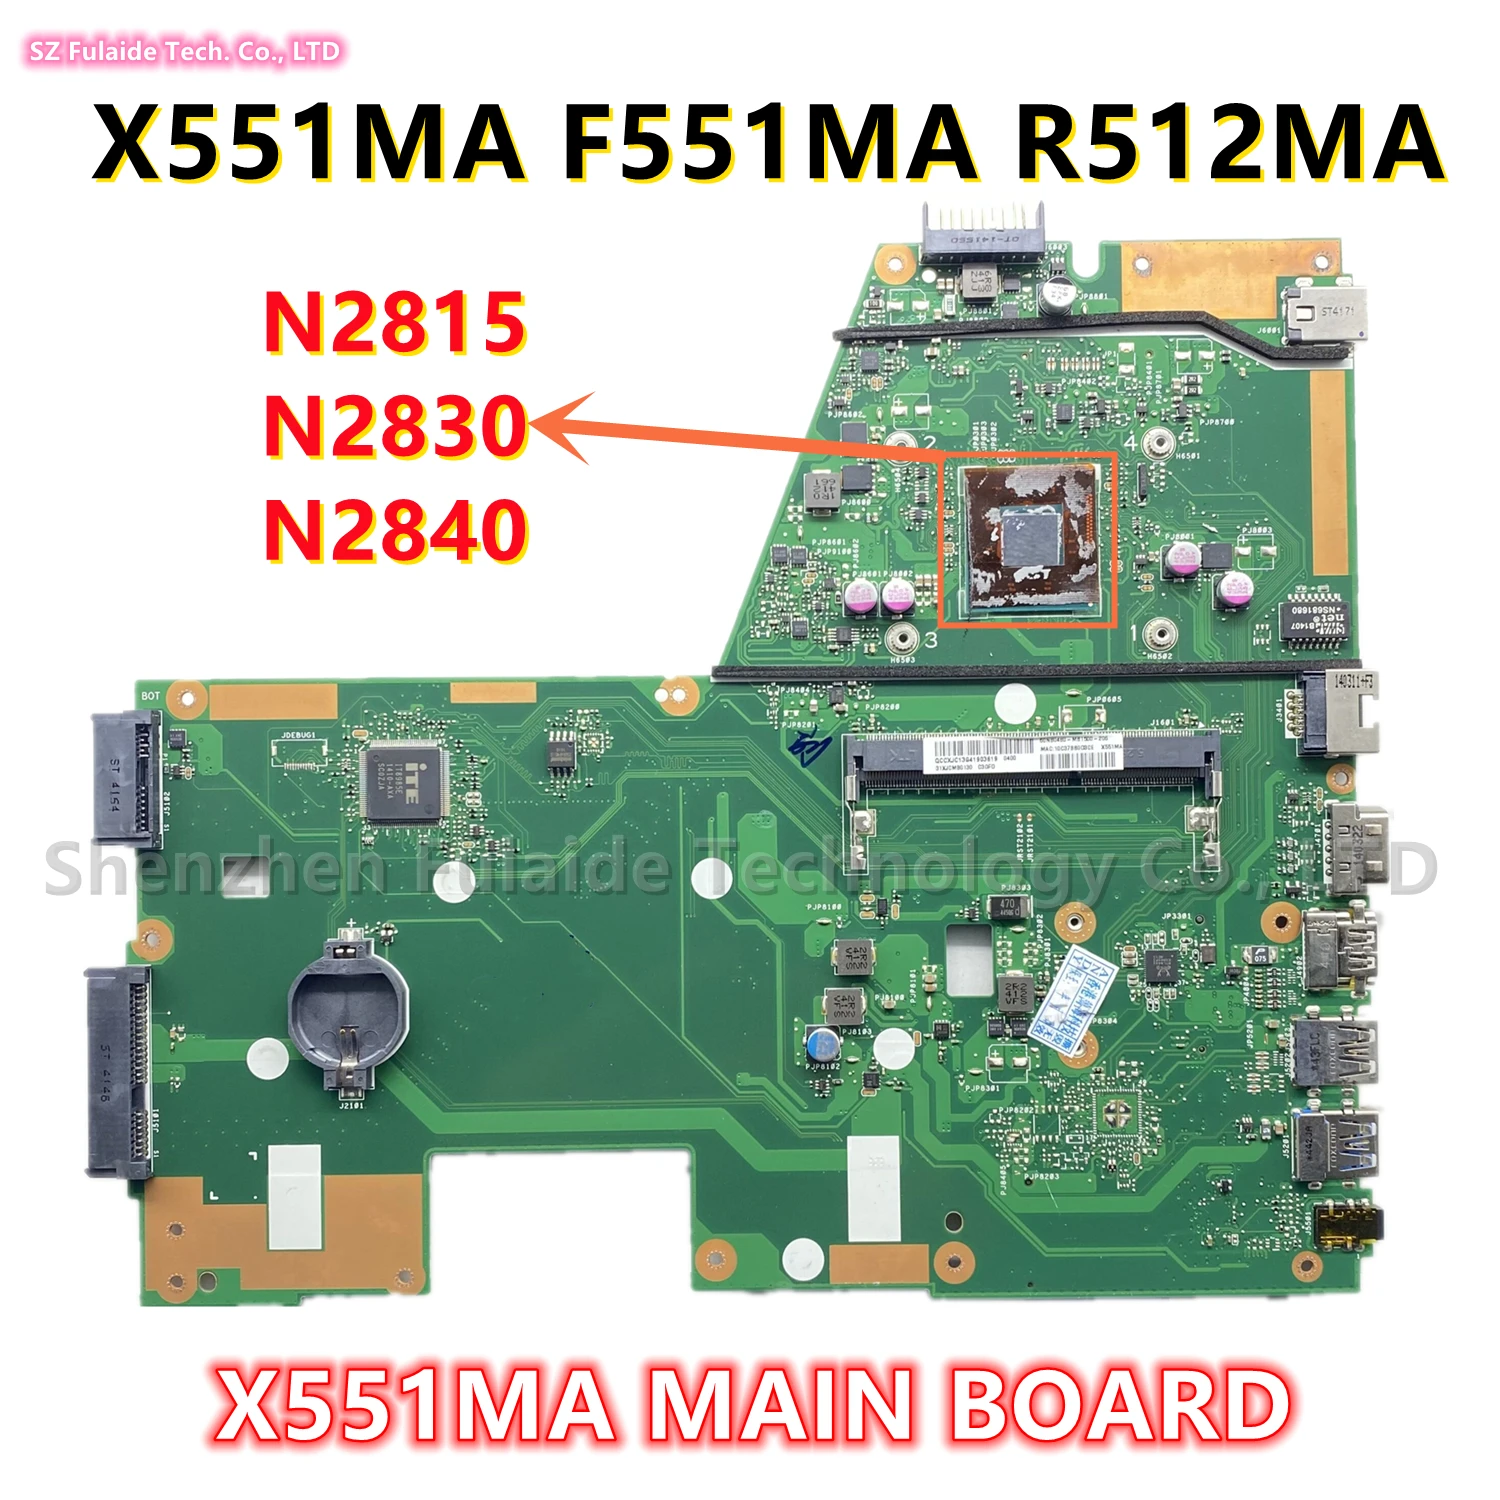 

X551MA MAIN BOARD For Asus X551MA F551MA R512MA Laotop Motherboard With N2815 N2830 N2840 CPU DDR3 100% Tested OK